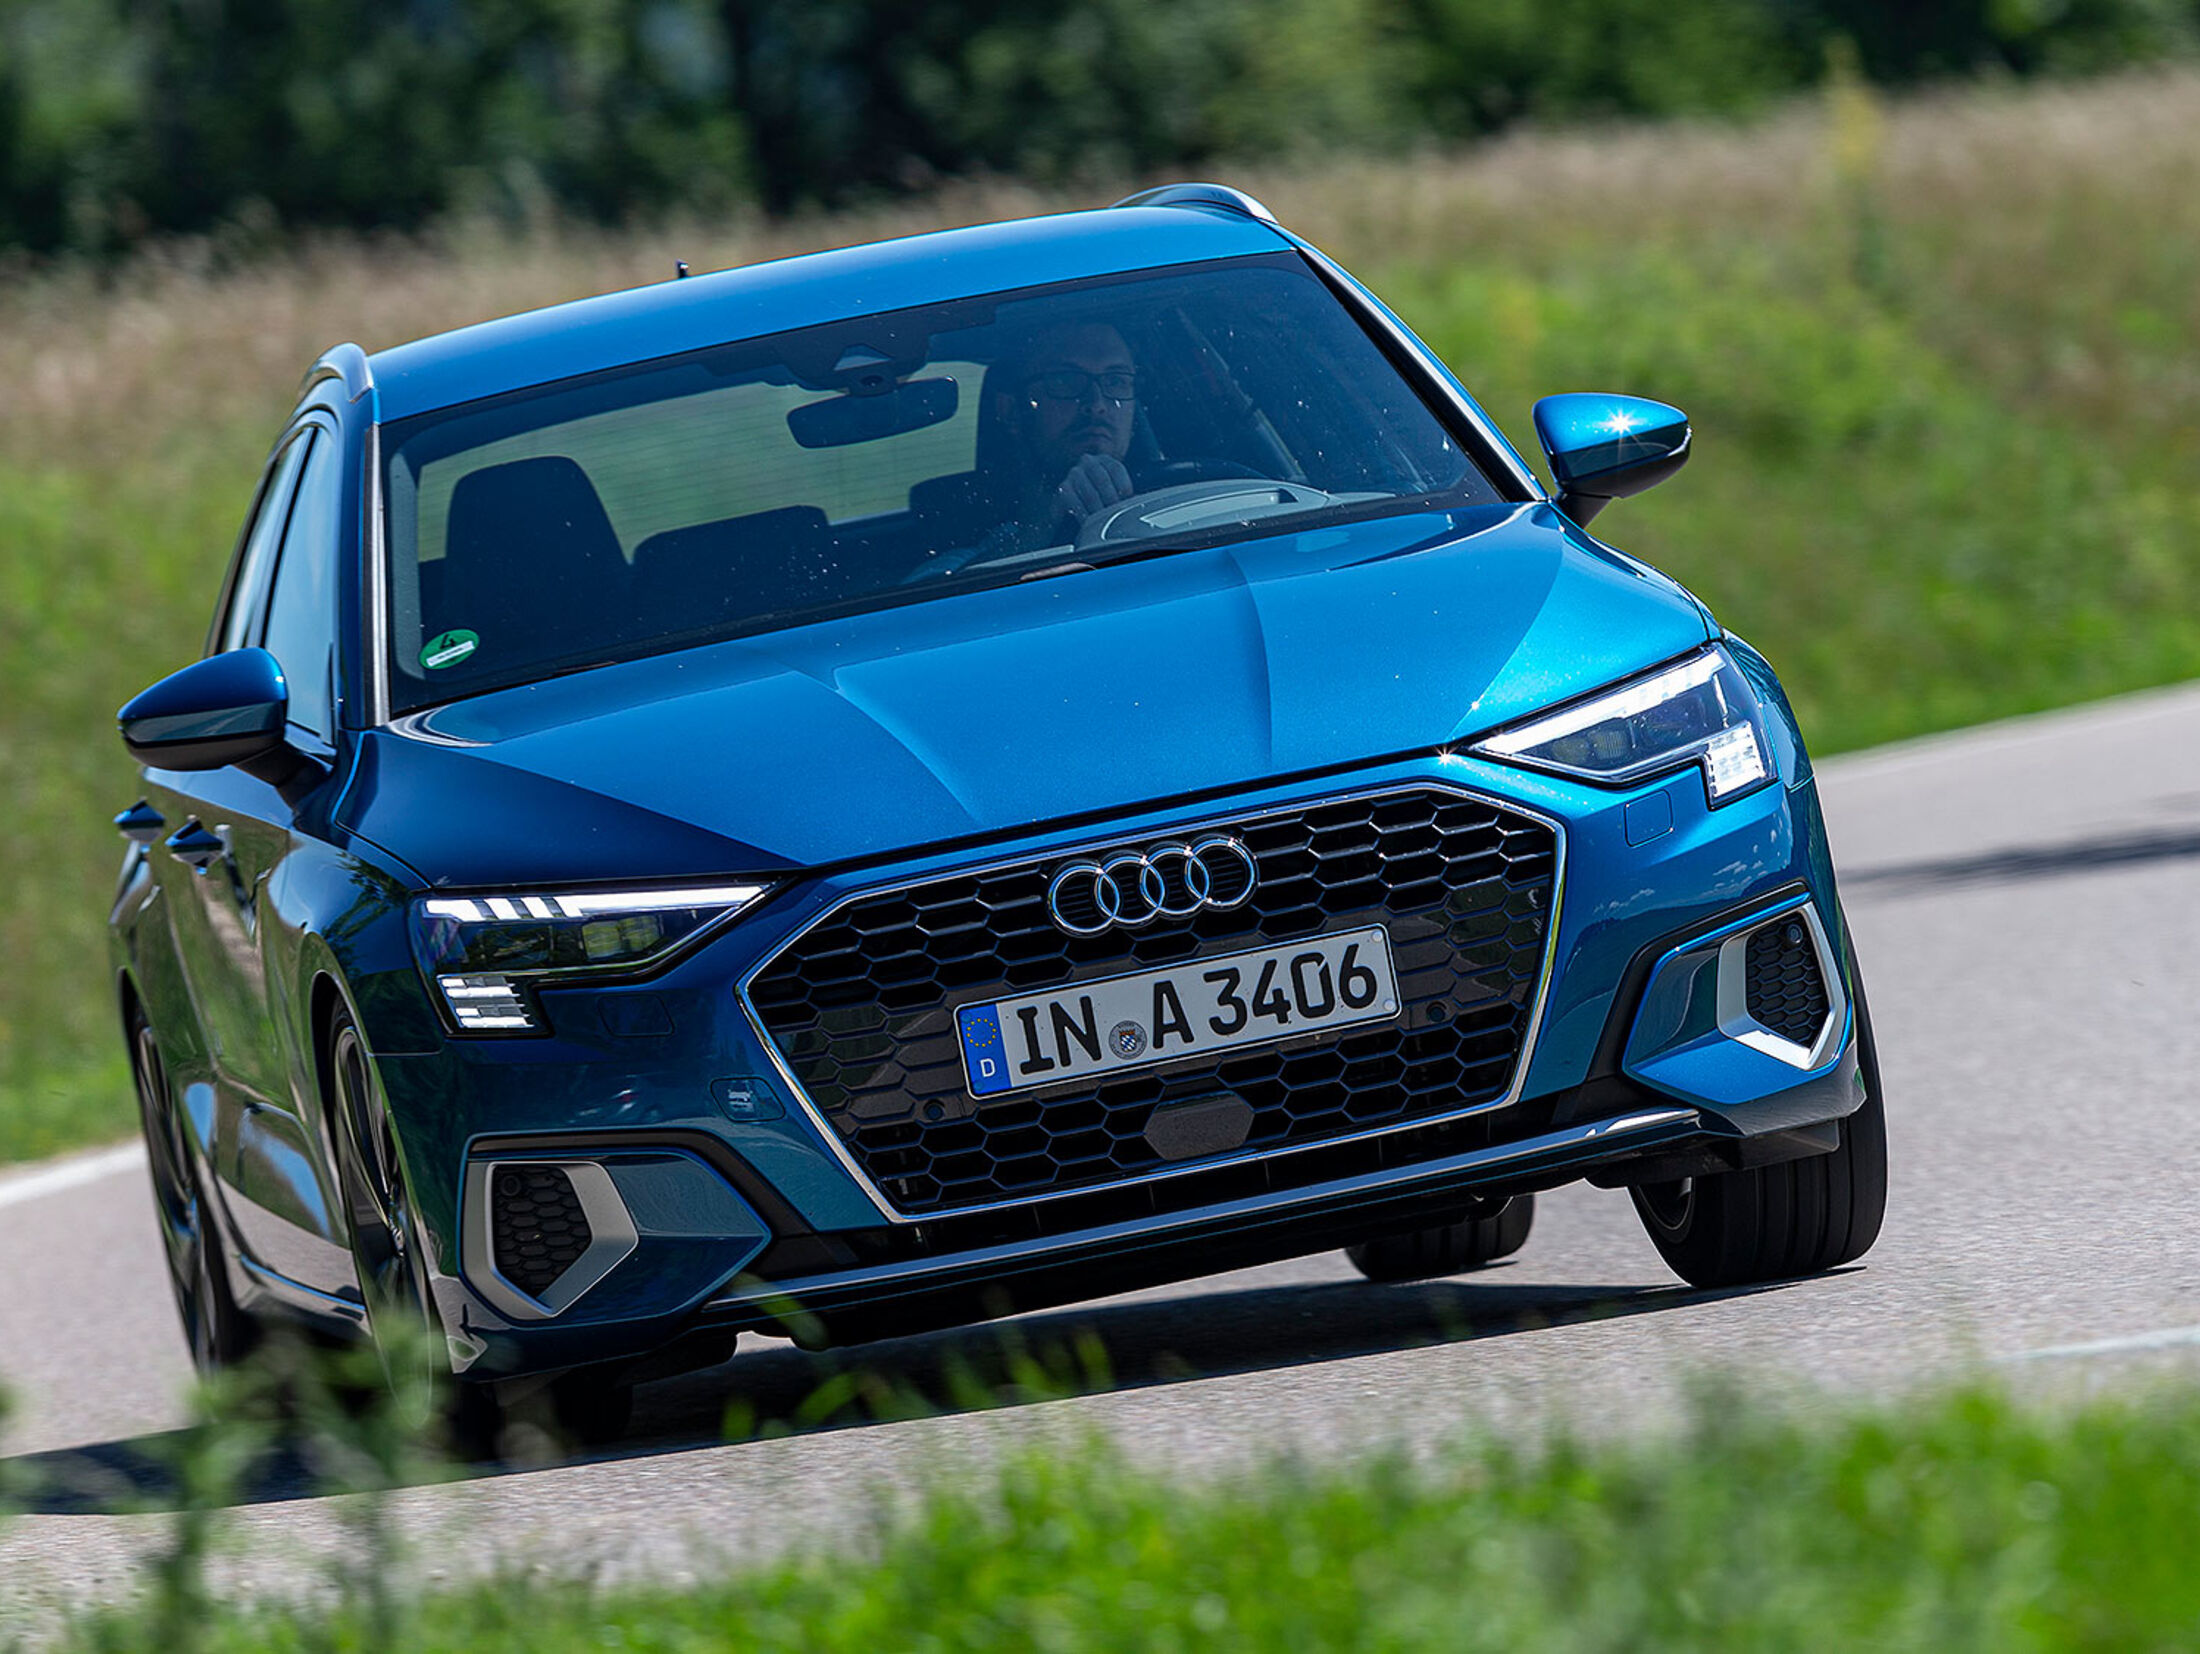 https://imgr1.auto-motor-und-sport.de/07-2020-Kosten-und-Realverbrauch-Audi-A3-35-TFSI-Advanced-jsonLd4x3-24abc1e3-1710593.jpg